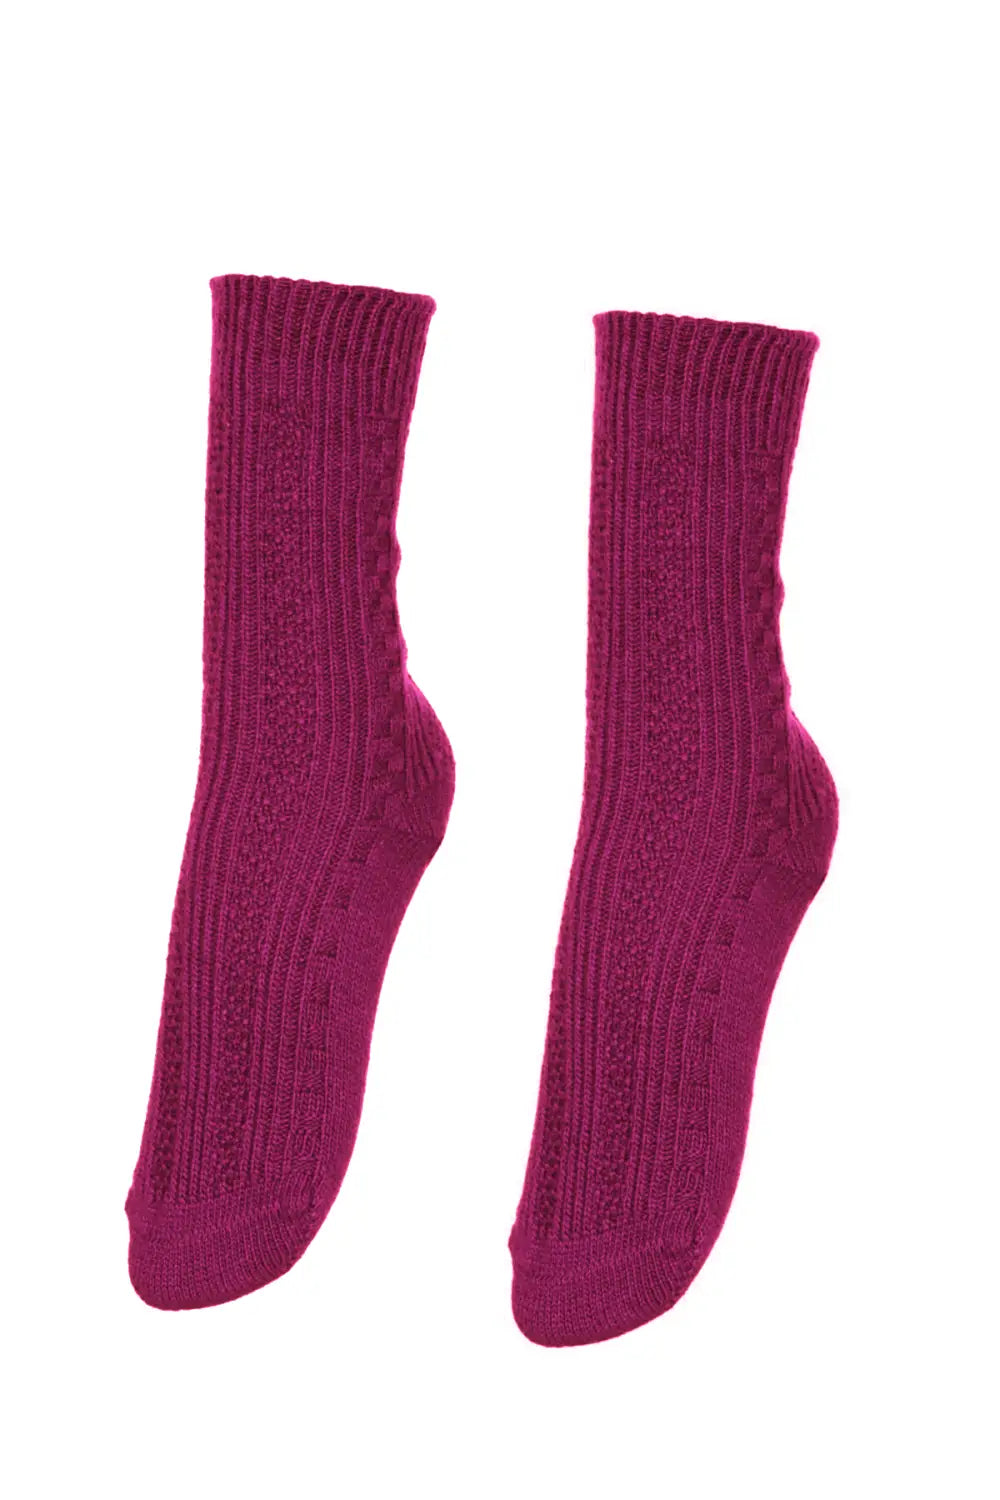 Kadın Örgülü Soket Dikişsiz Yünlü Çorap Kışlık Uyku Gündelik Çorabı Soft Touch 36 - 40